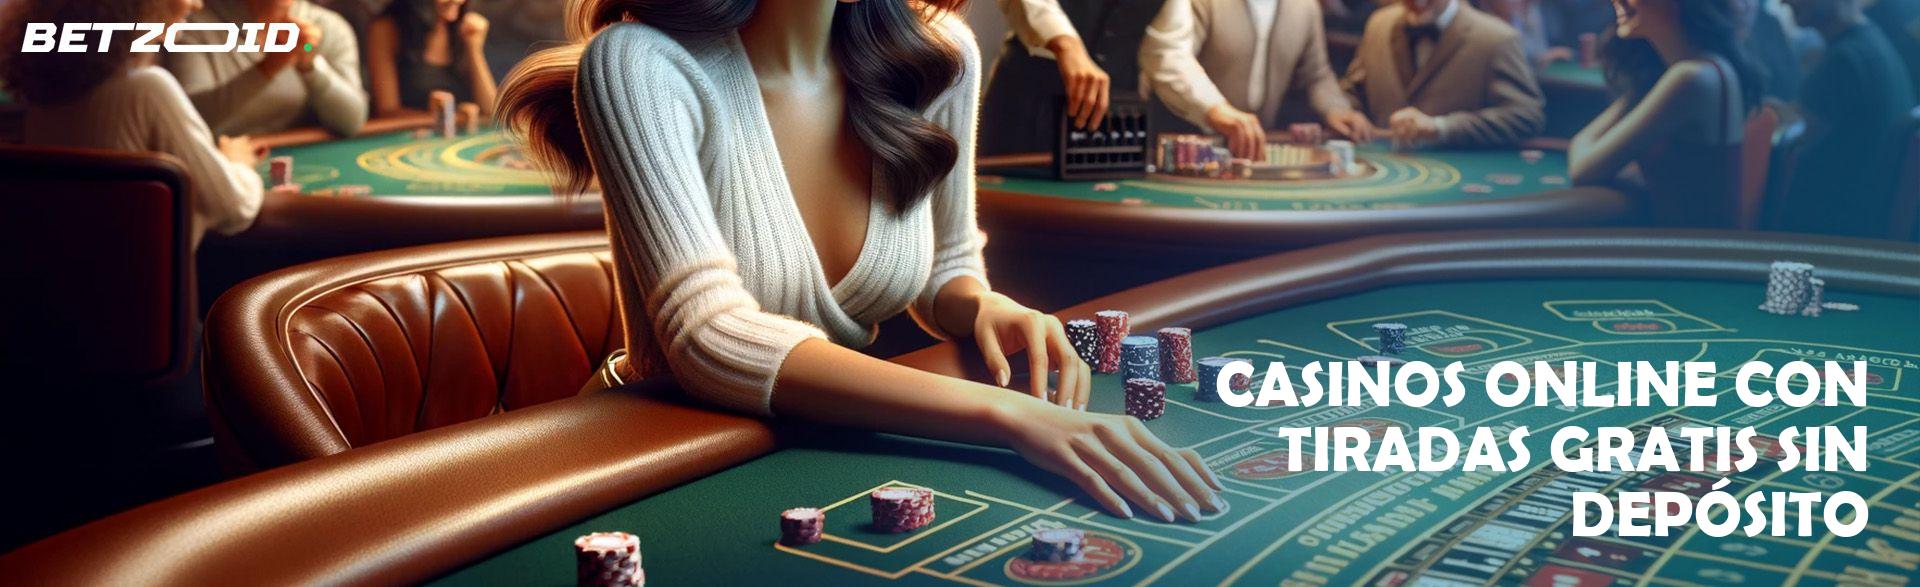 Casinos Online con Tiradas Gratis sin Depósito.